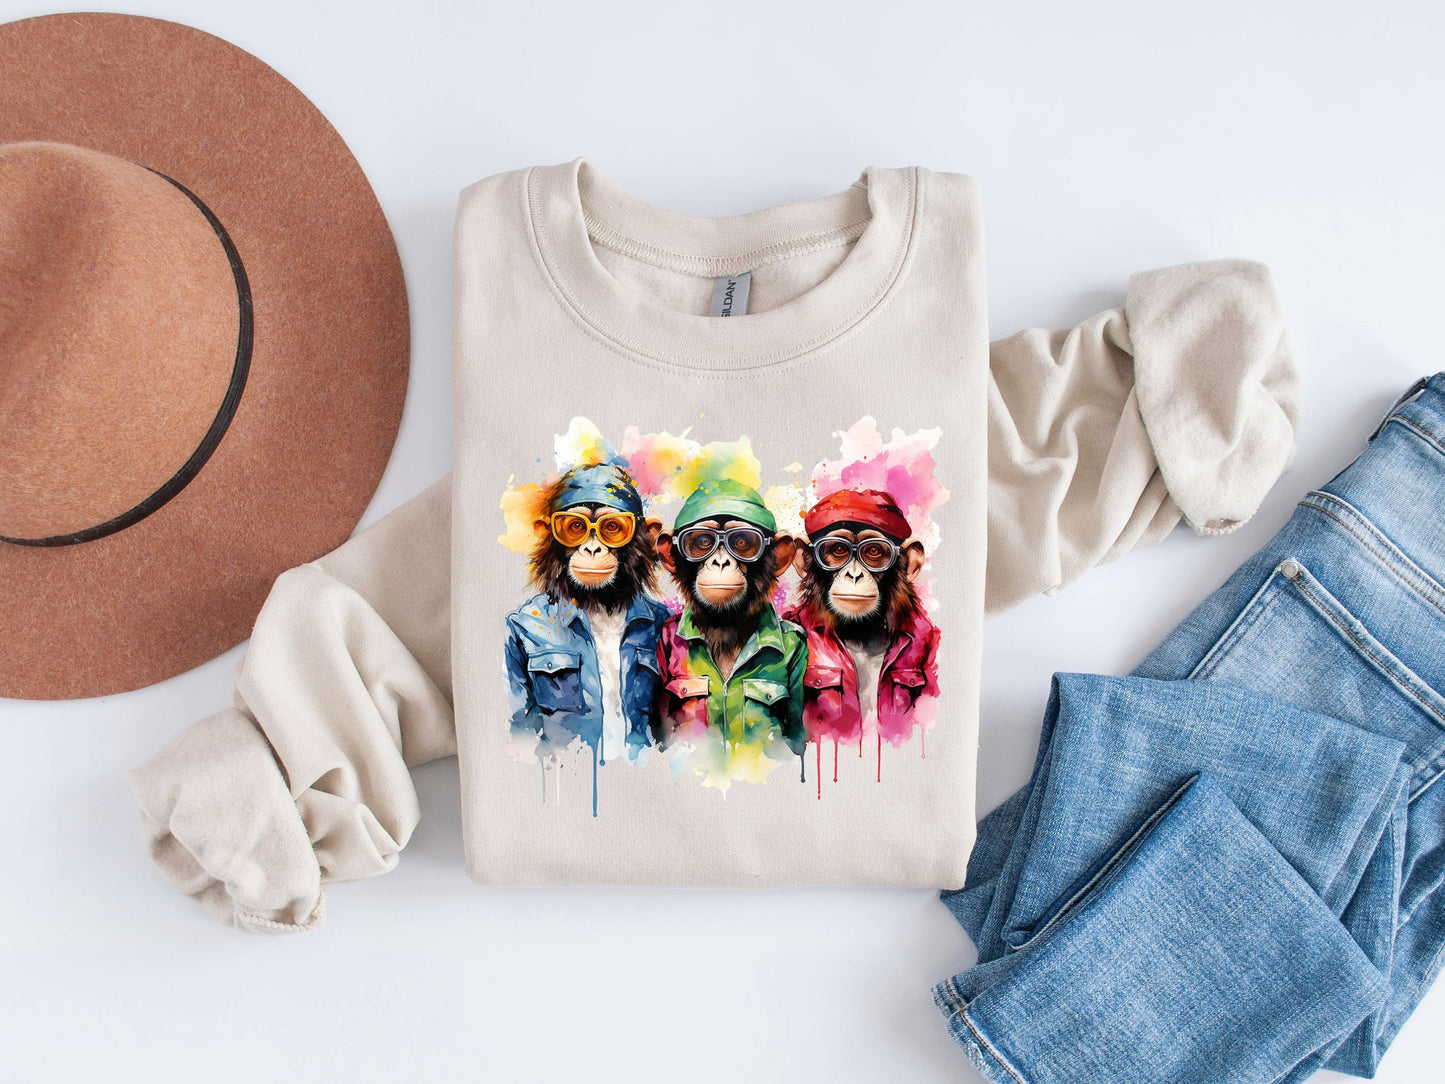 Monkey Squad: Playful Group Photo Sublimation Shirt Design - Monkey Shirt Sublimation